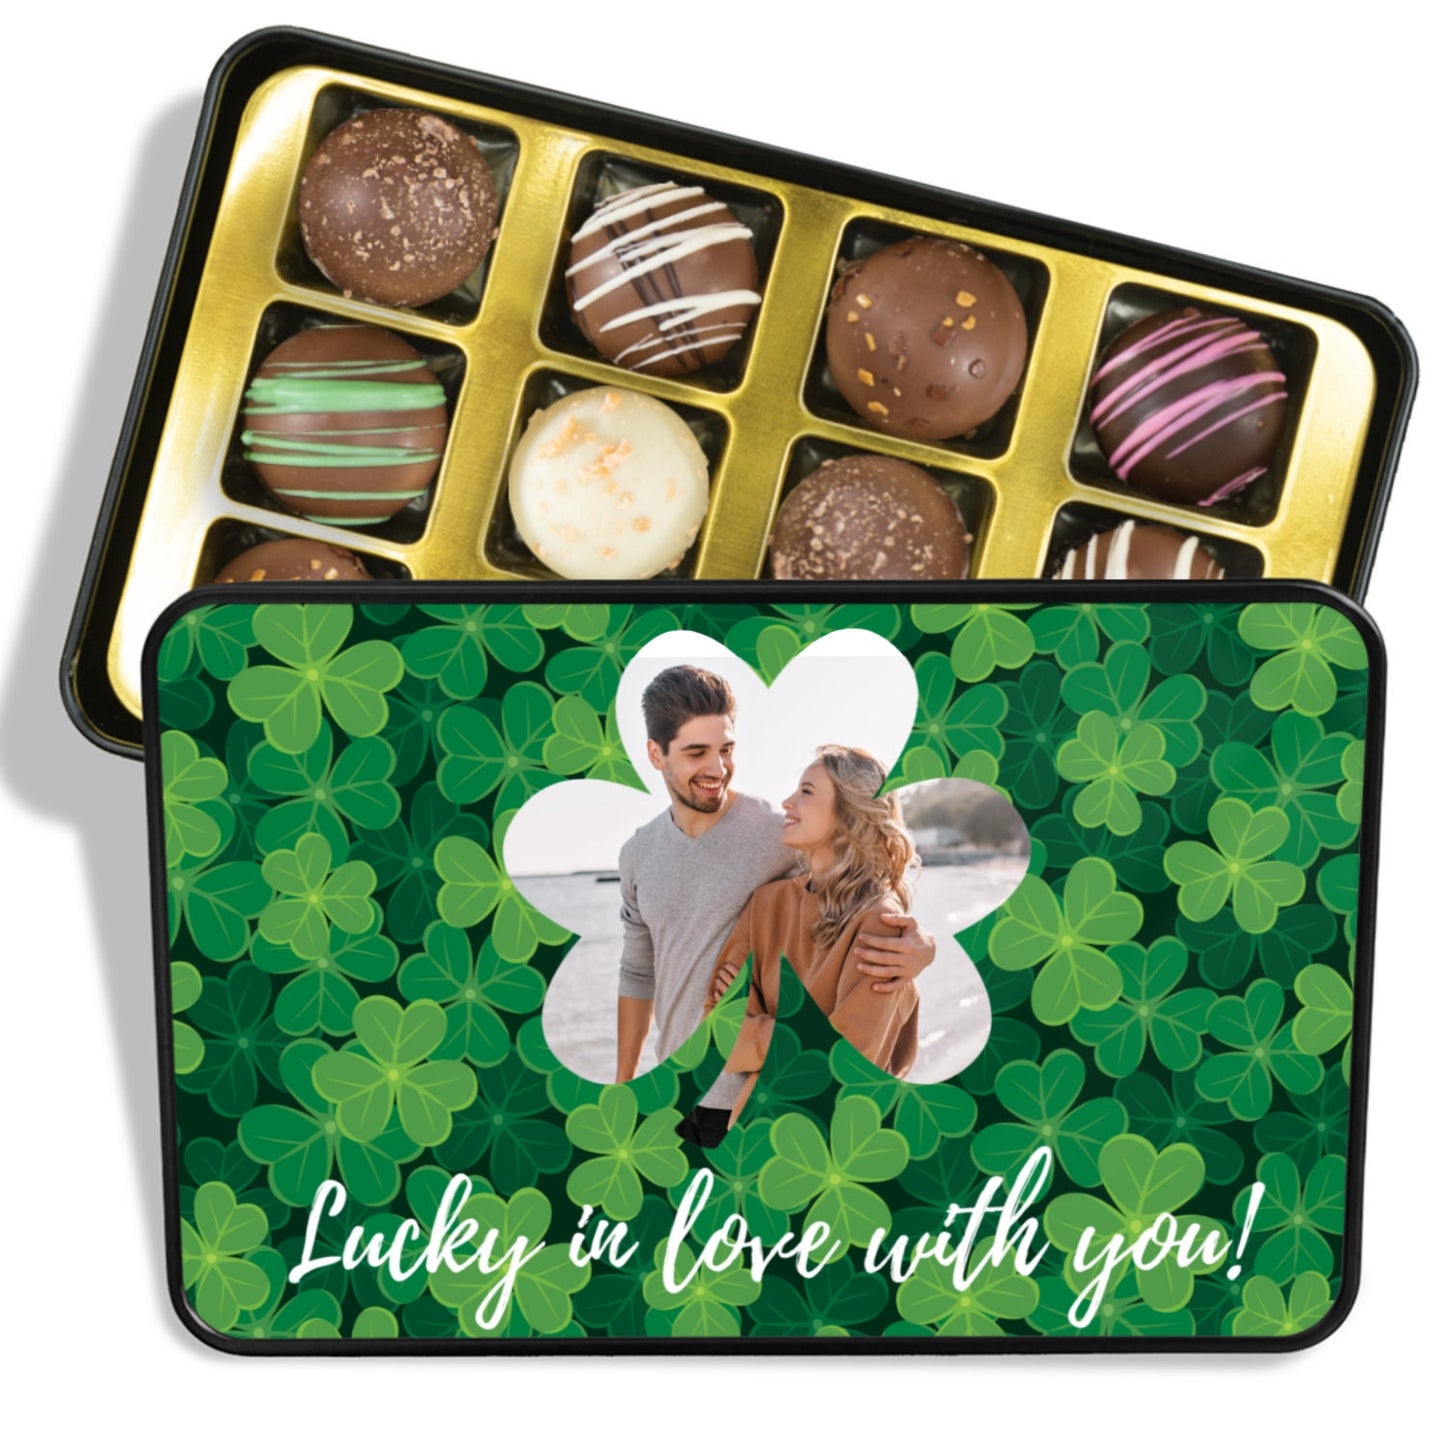 Personalized St. Patricks Day Chocolate Truffles, Custom Photo Chocolate Box, Irish Gifts for Her, Irish Gifts for Men, Saint Patricks Day